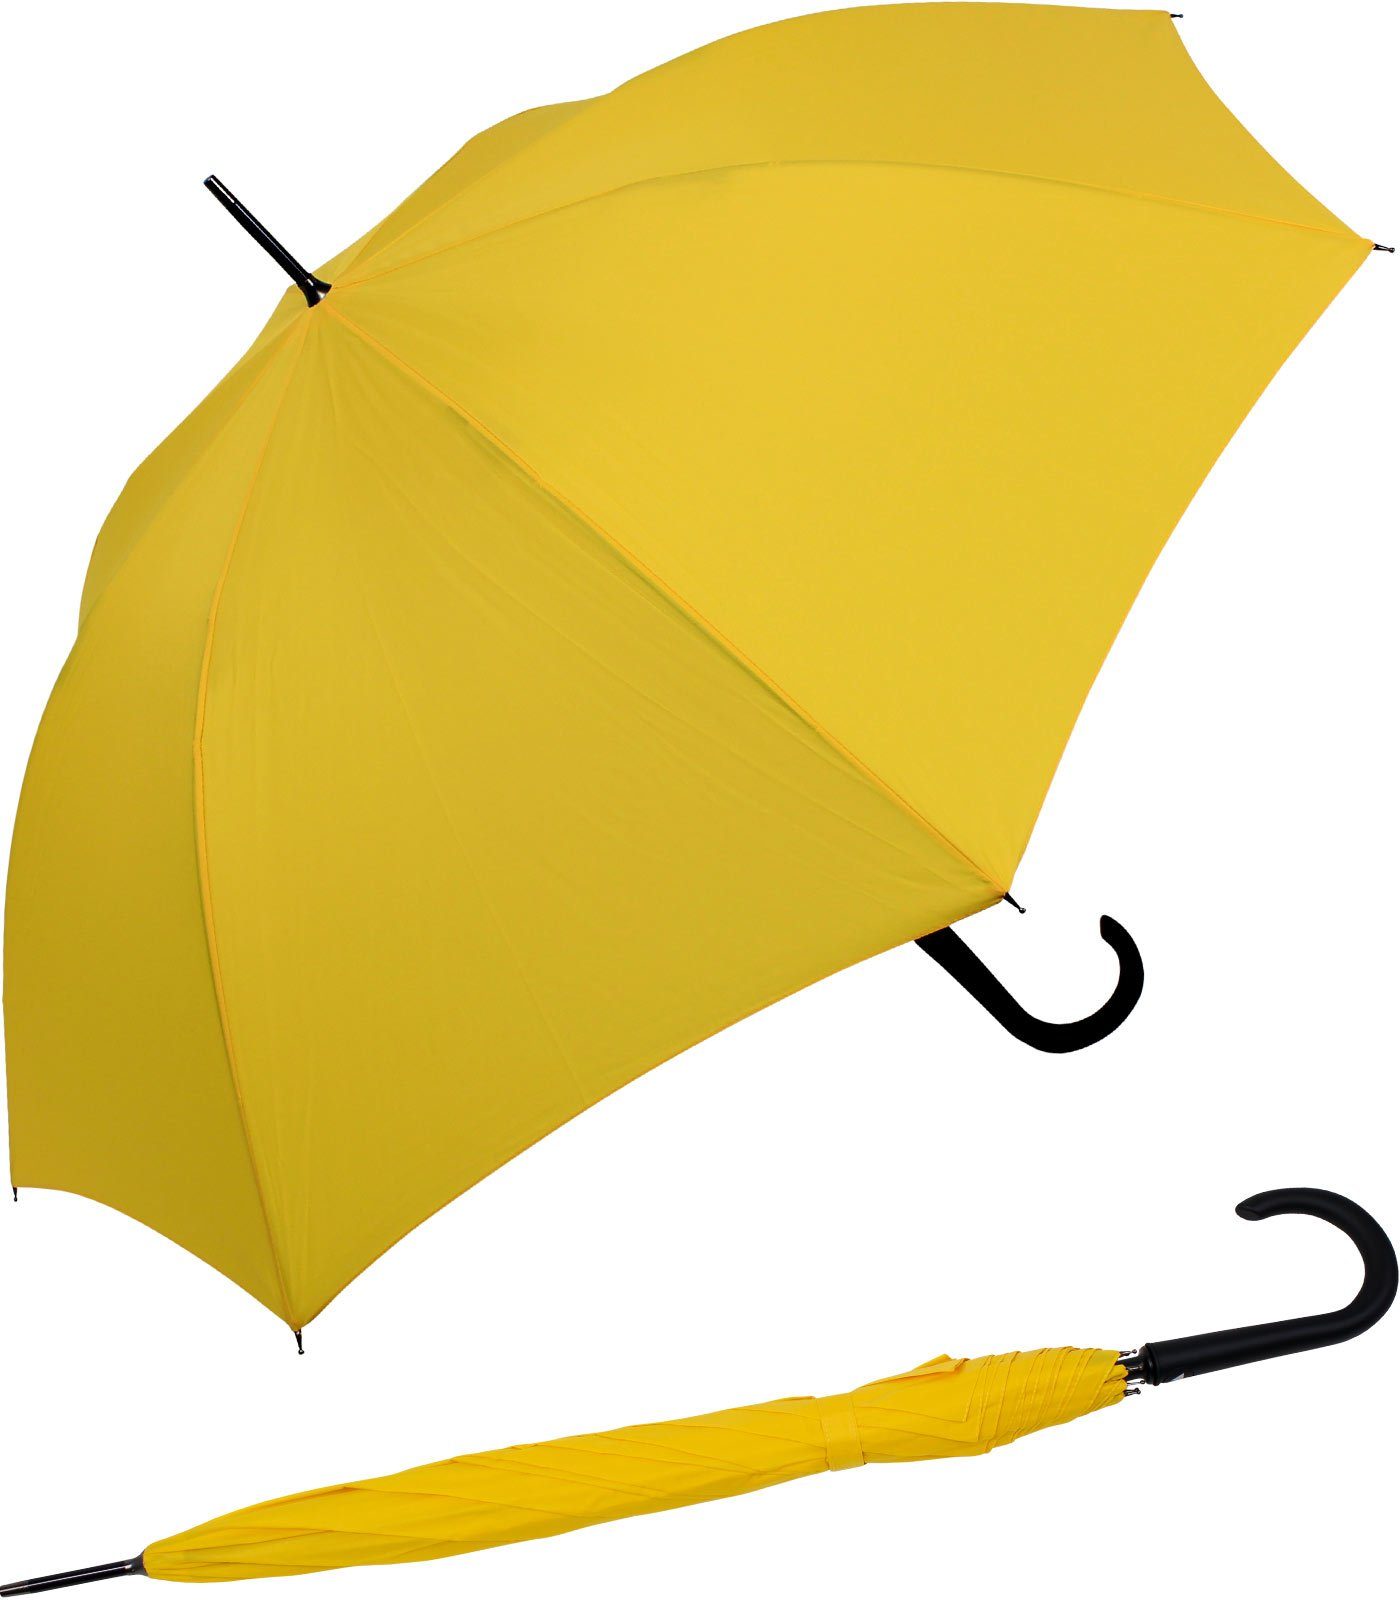 RS-Versand Langregenschirm großer stabiler Regenschirm mit Auf-Automatik, Stahl-Fiberglas-Gestell, integrierter Auslöseknopf gelb